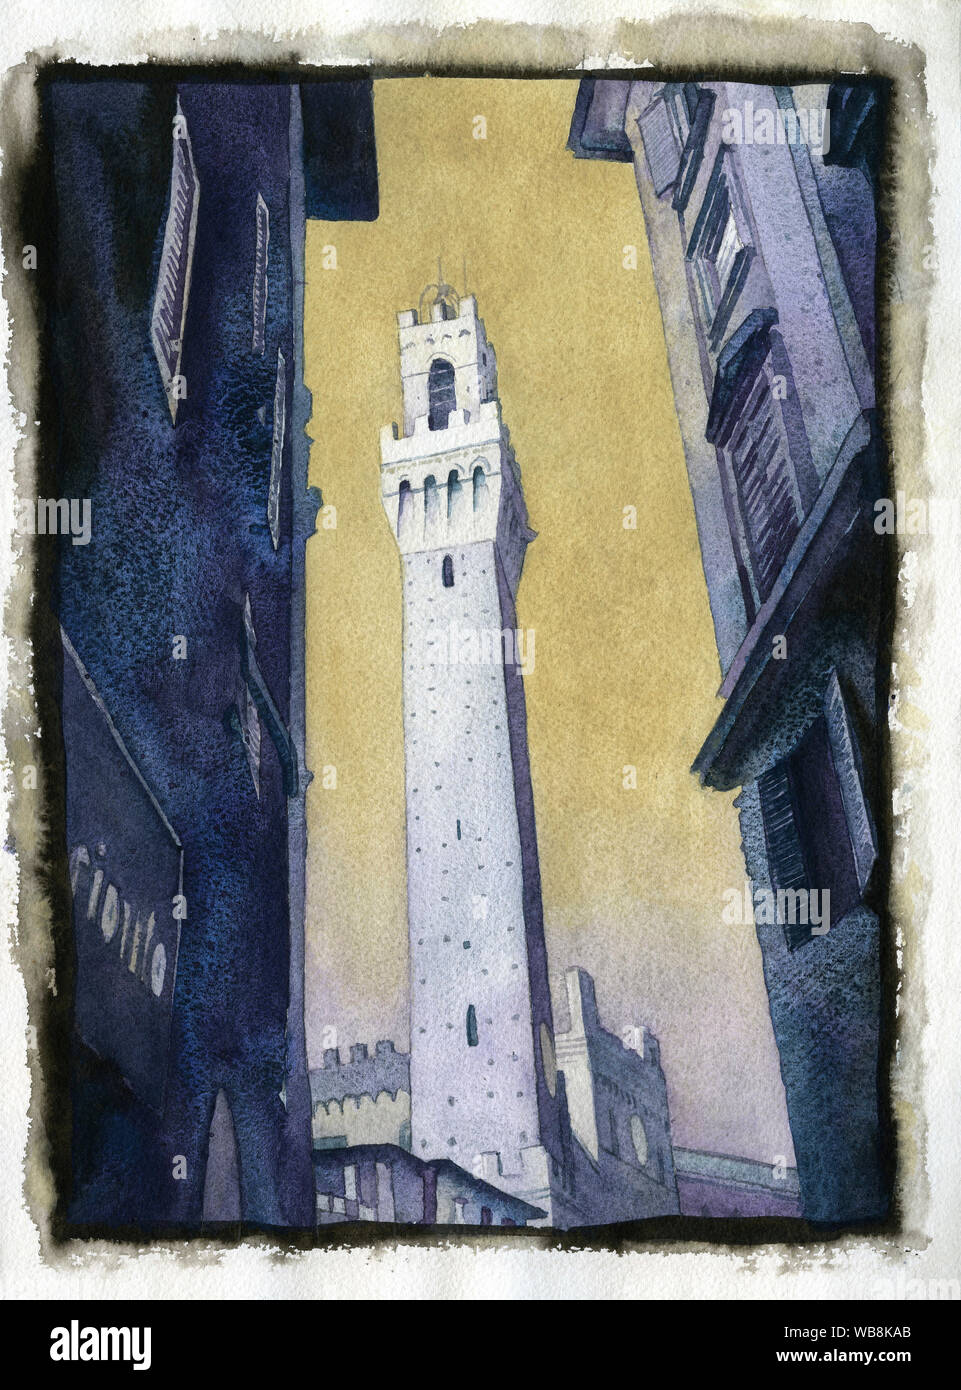 La Piazza del Campo dans la ville médiévale de Sienne, Italie. L'aquarelle de la tour de Mangia dans le Pubblico Palace à Sienne. Banque D'Images